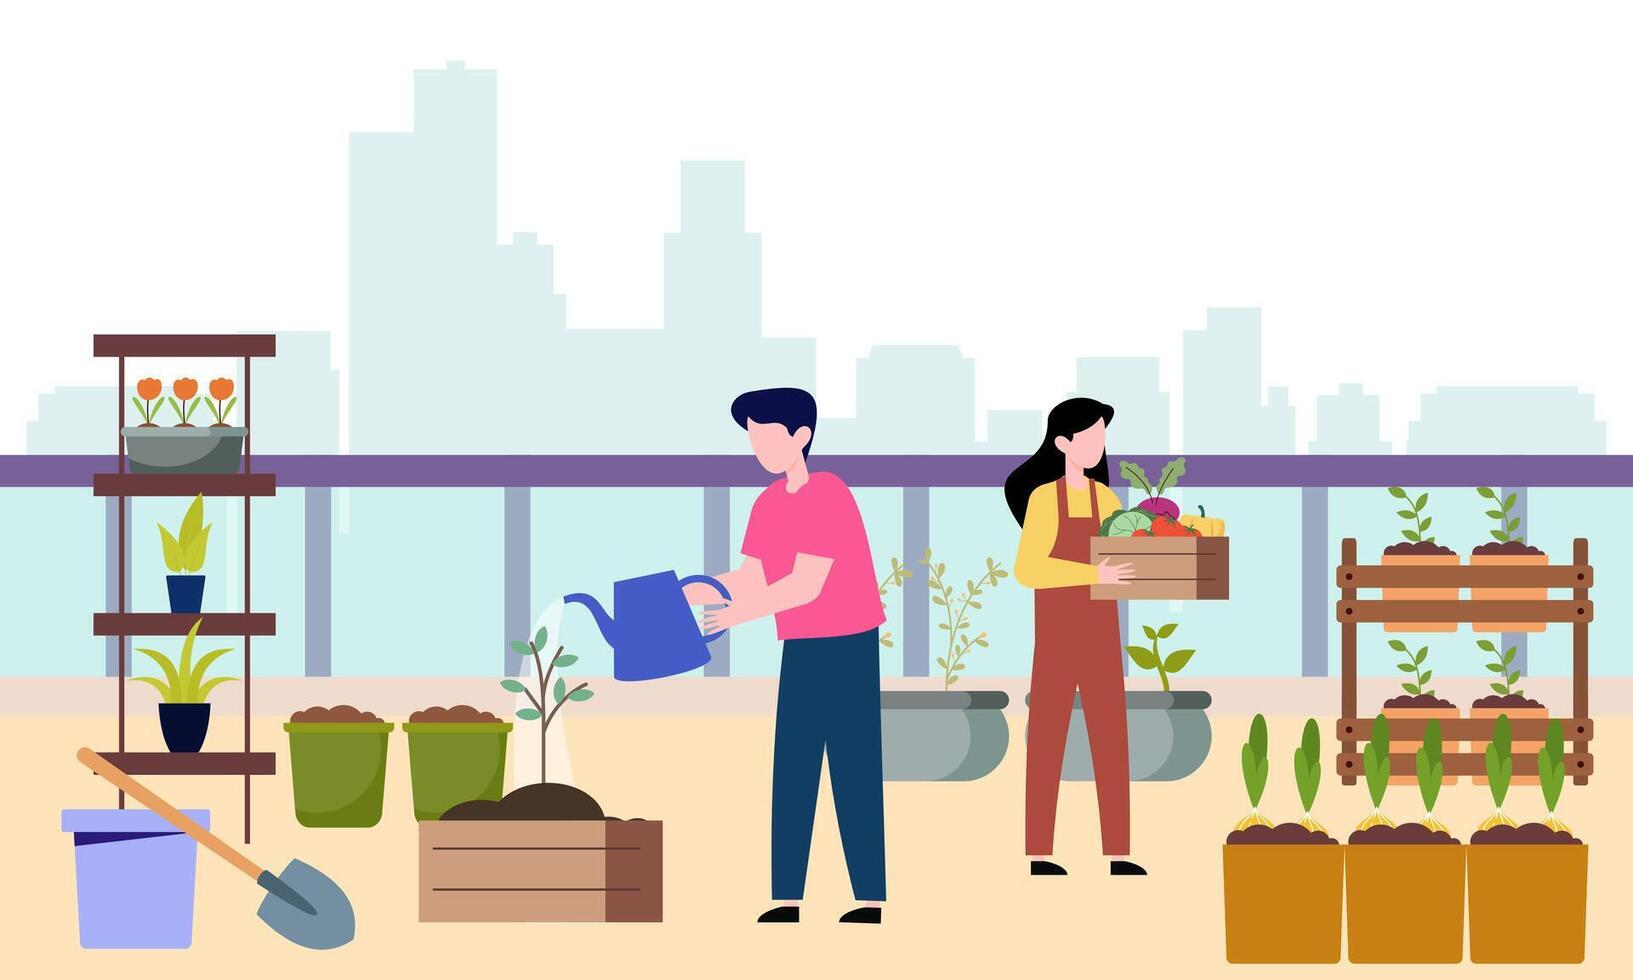 People gardener farmer together arrangement green roof illustration vector